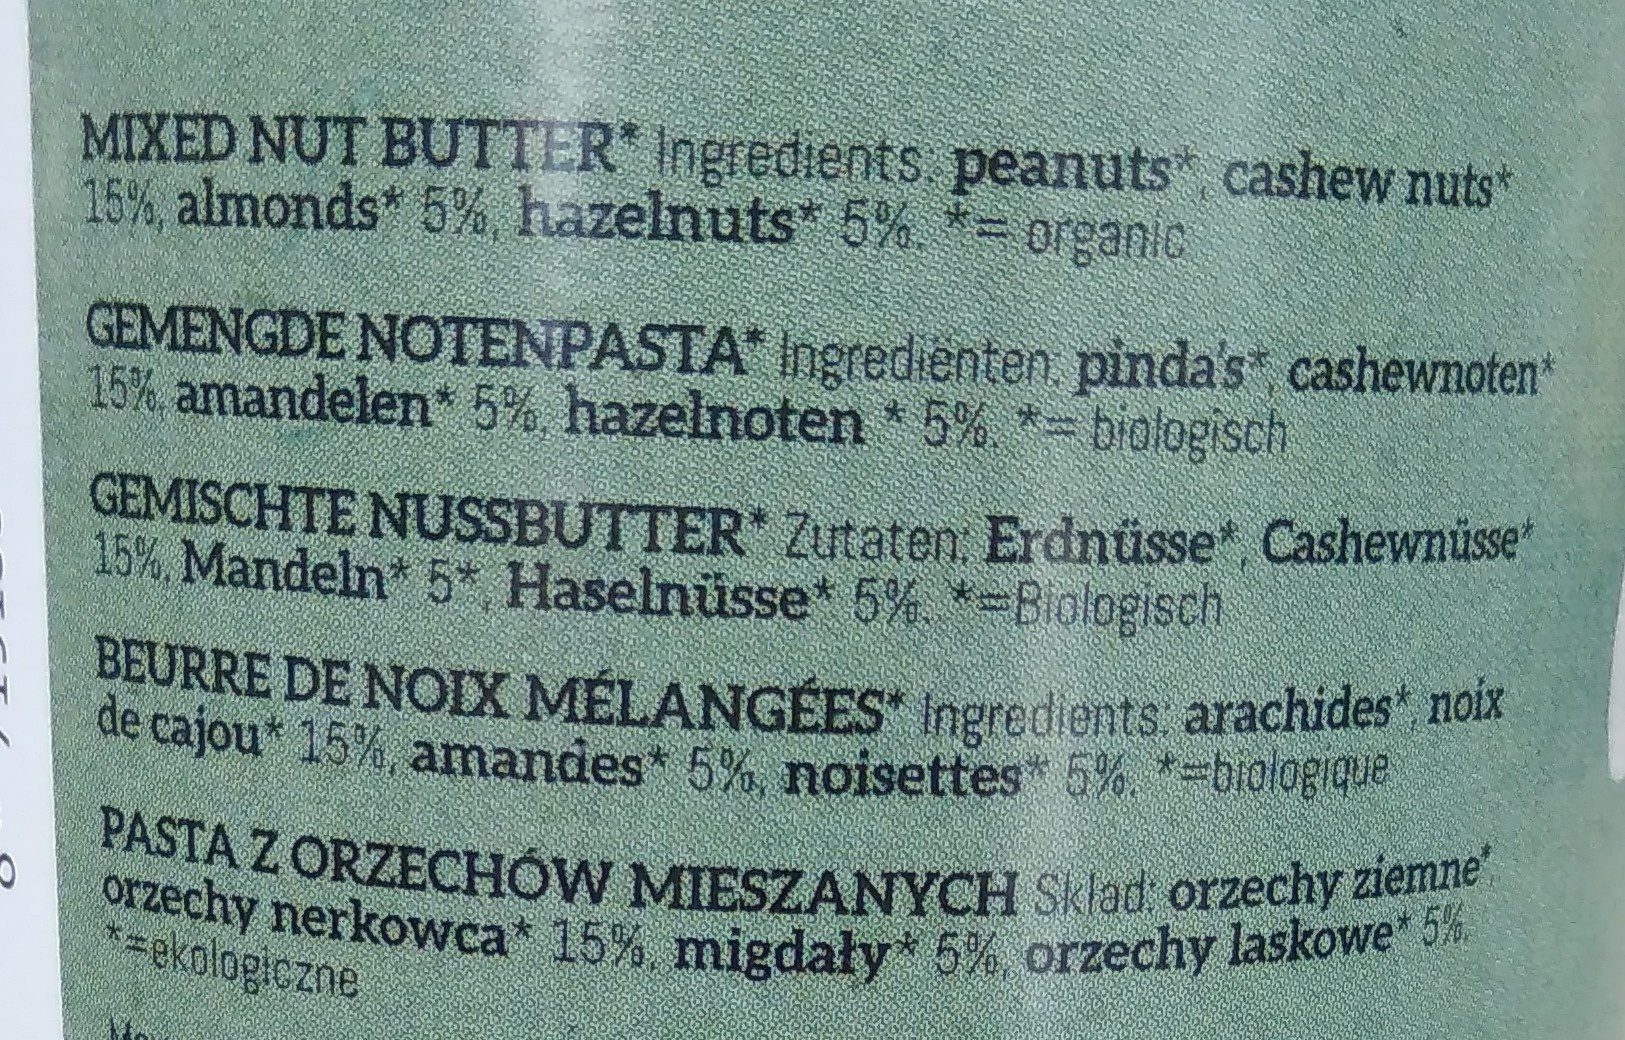 Beurre de noix mélangées - Ingrédients